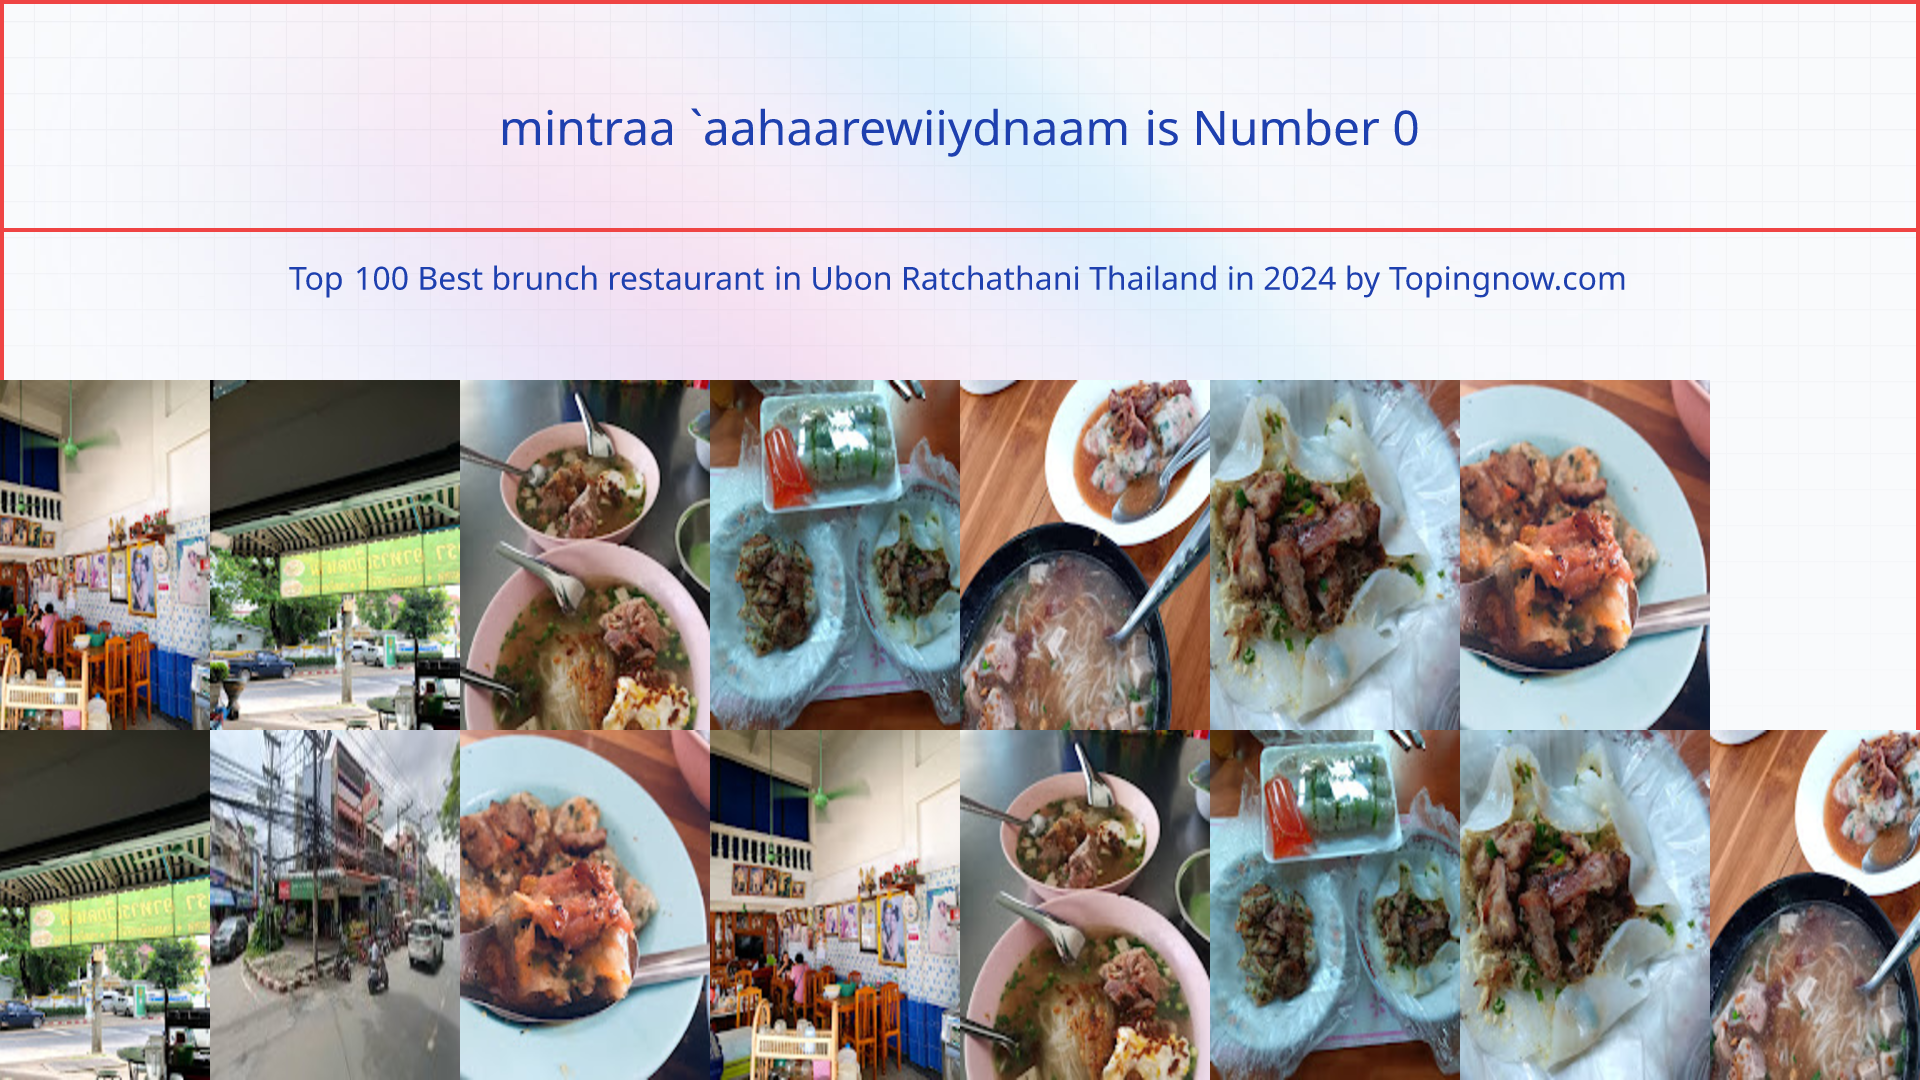 mintraa `aahaarewiiydnaam: Top 100 Best brunch restaurant in Ubon Ratchathani Thailand in 2024